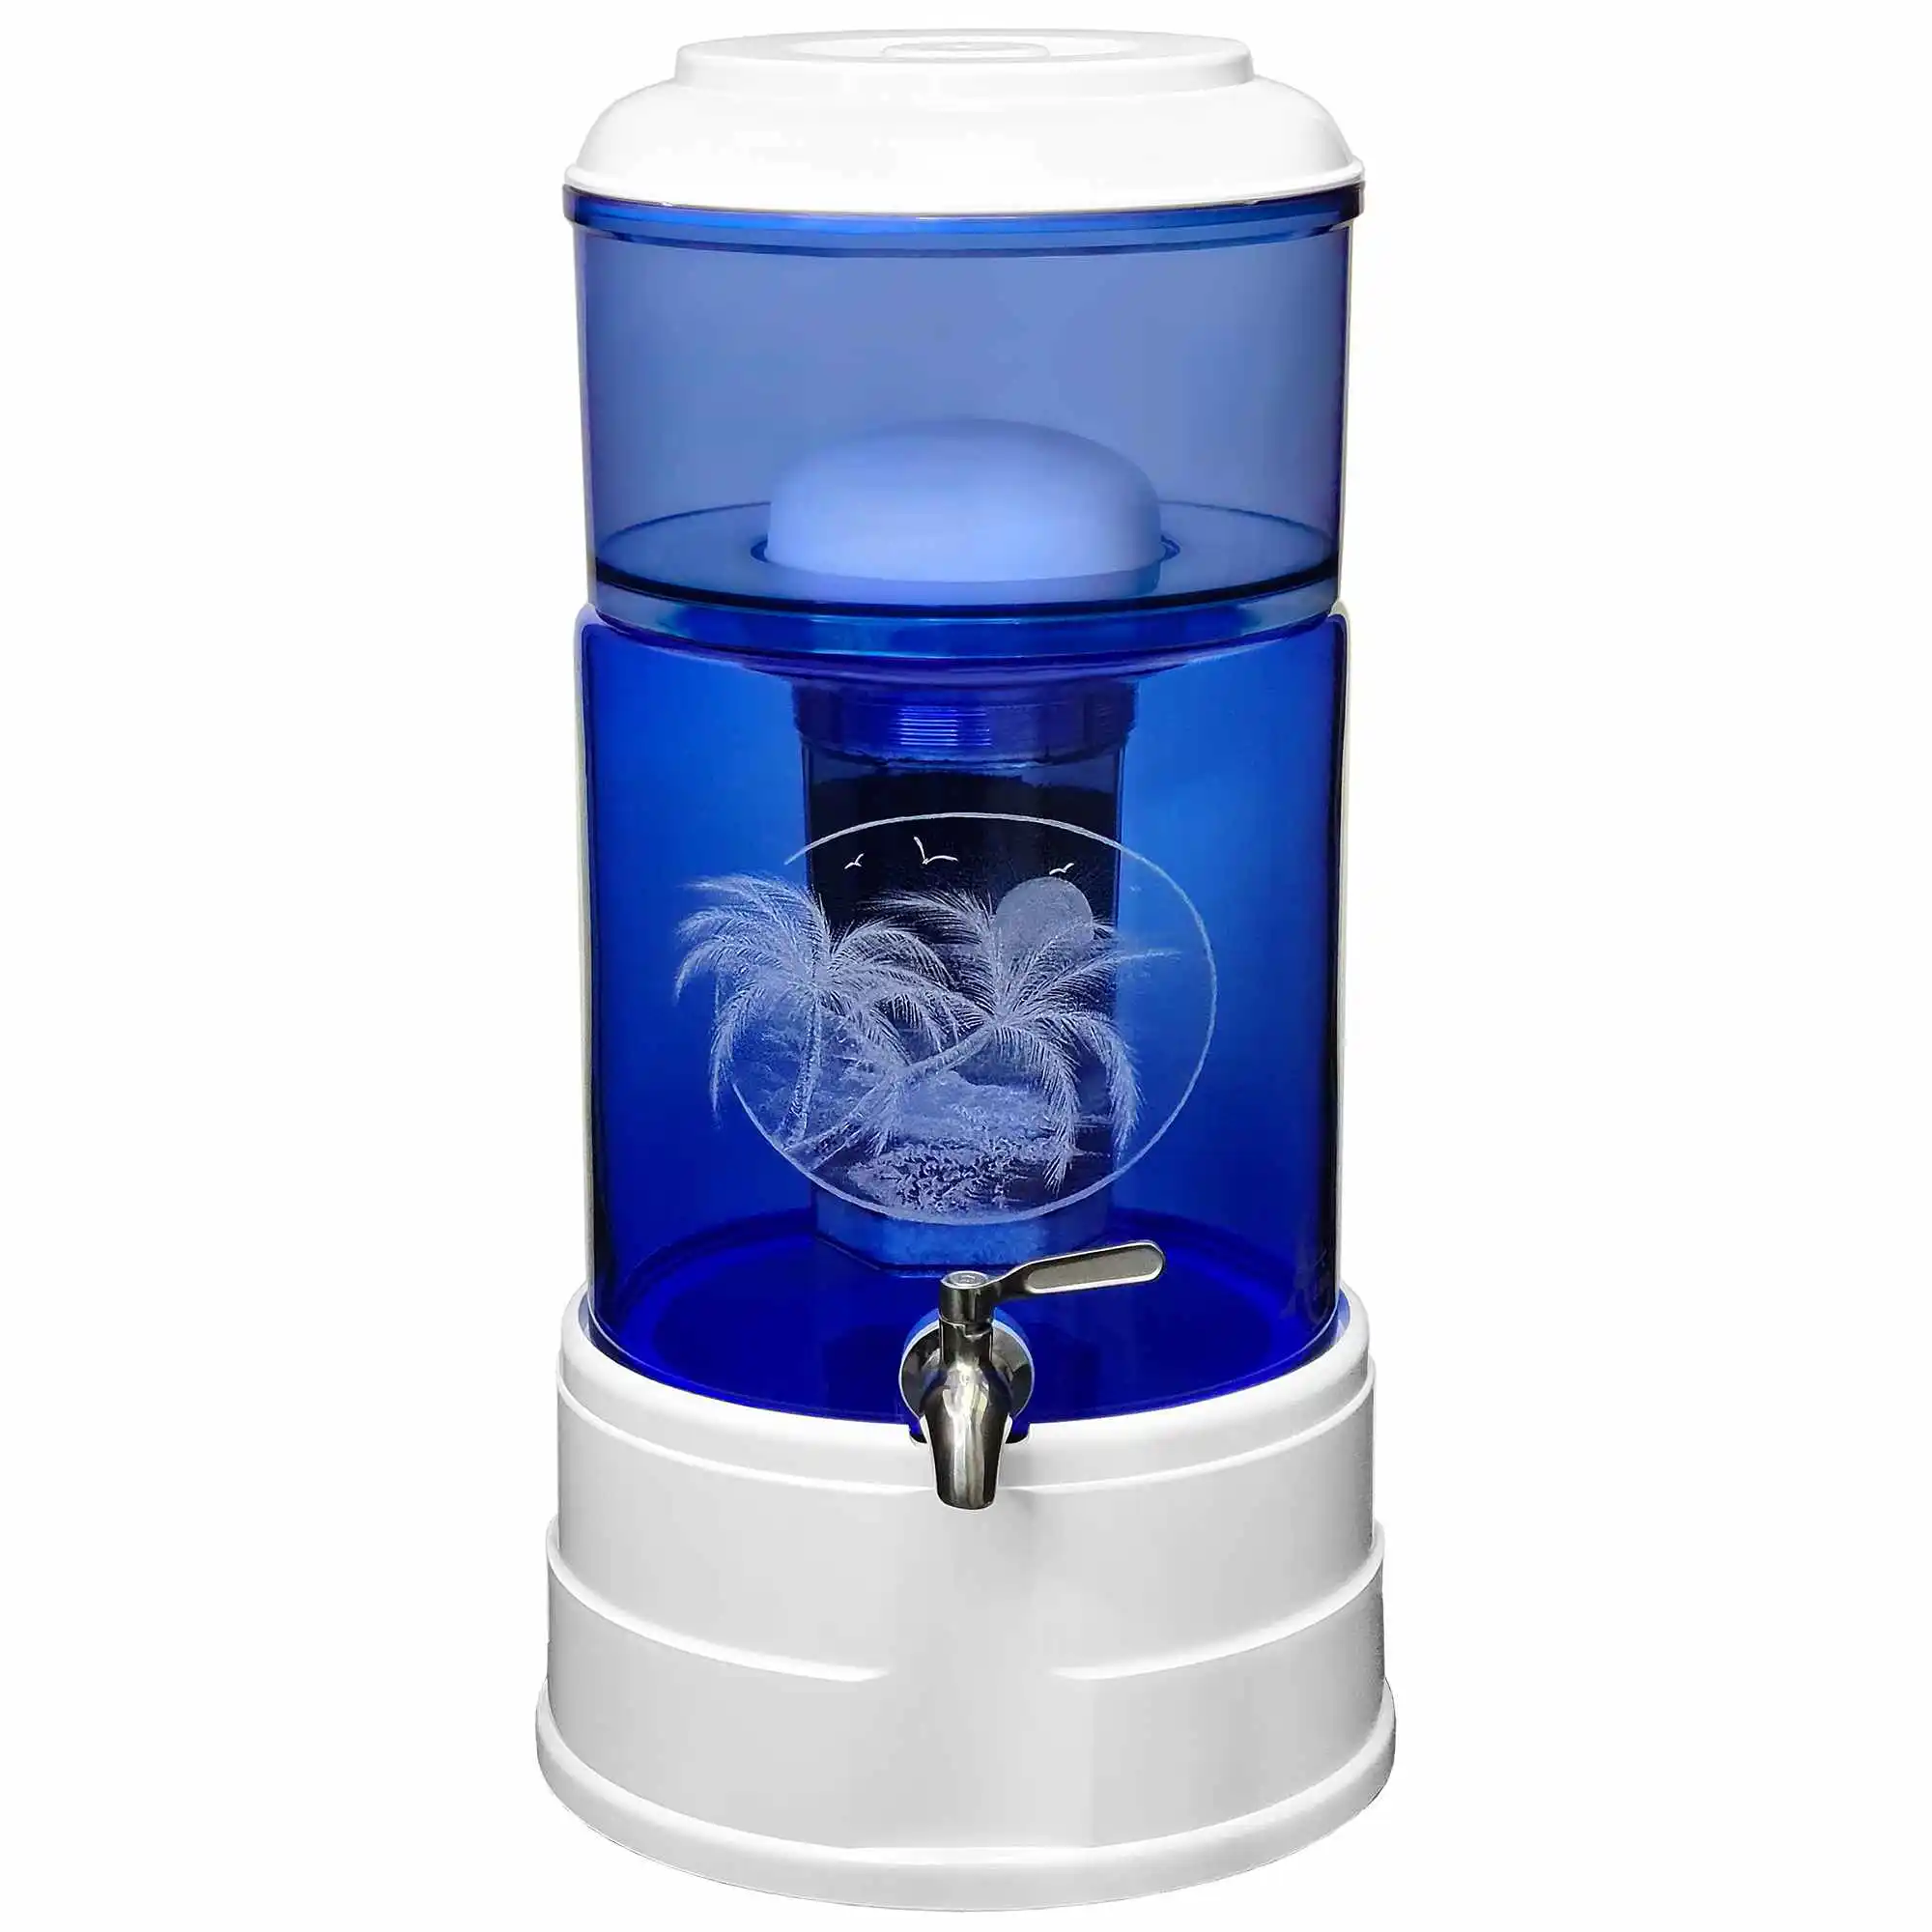 Ein Acala Standwasserfilter aus blauem Glas auf, dass ein tropische Szene mit Palmen und Meer graviert ist.